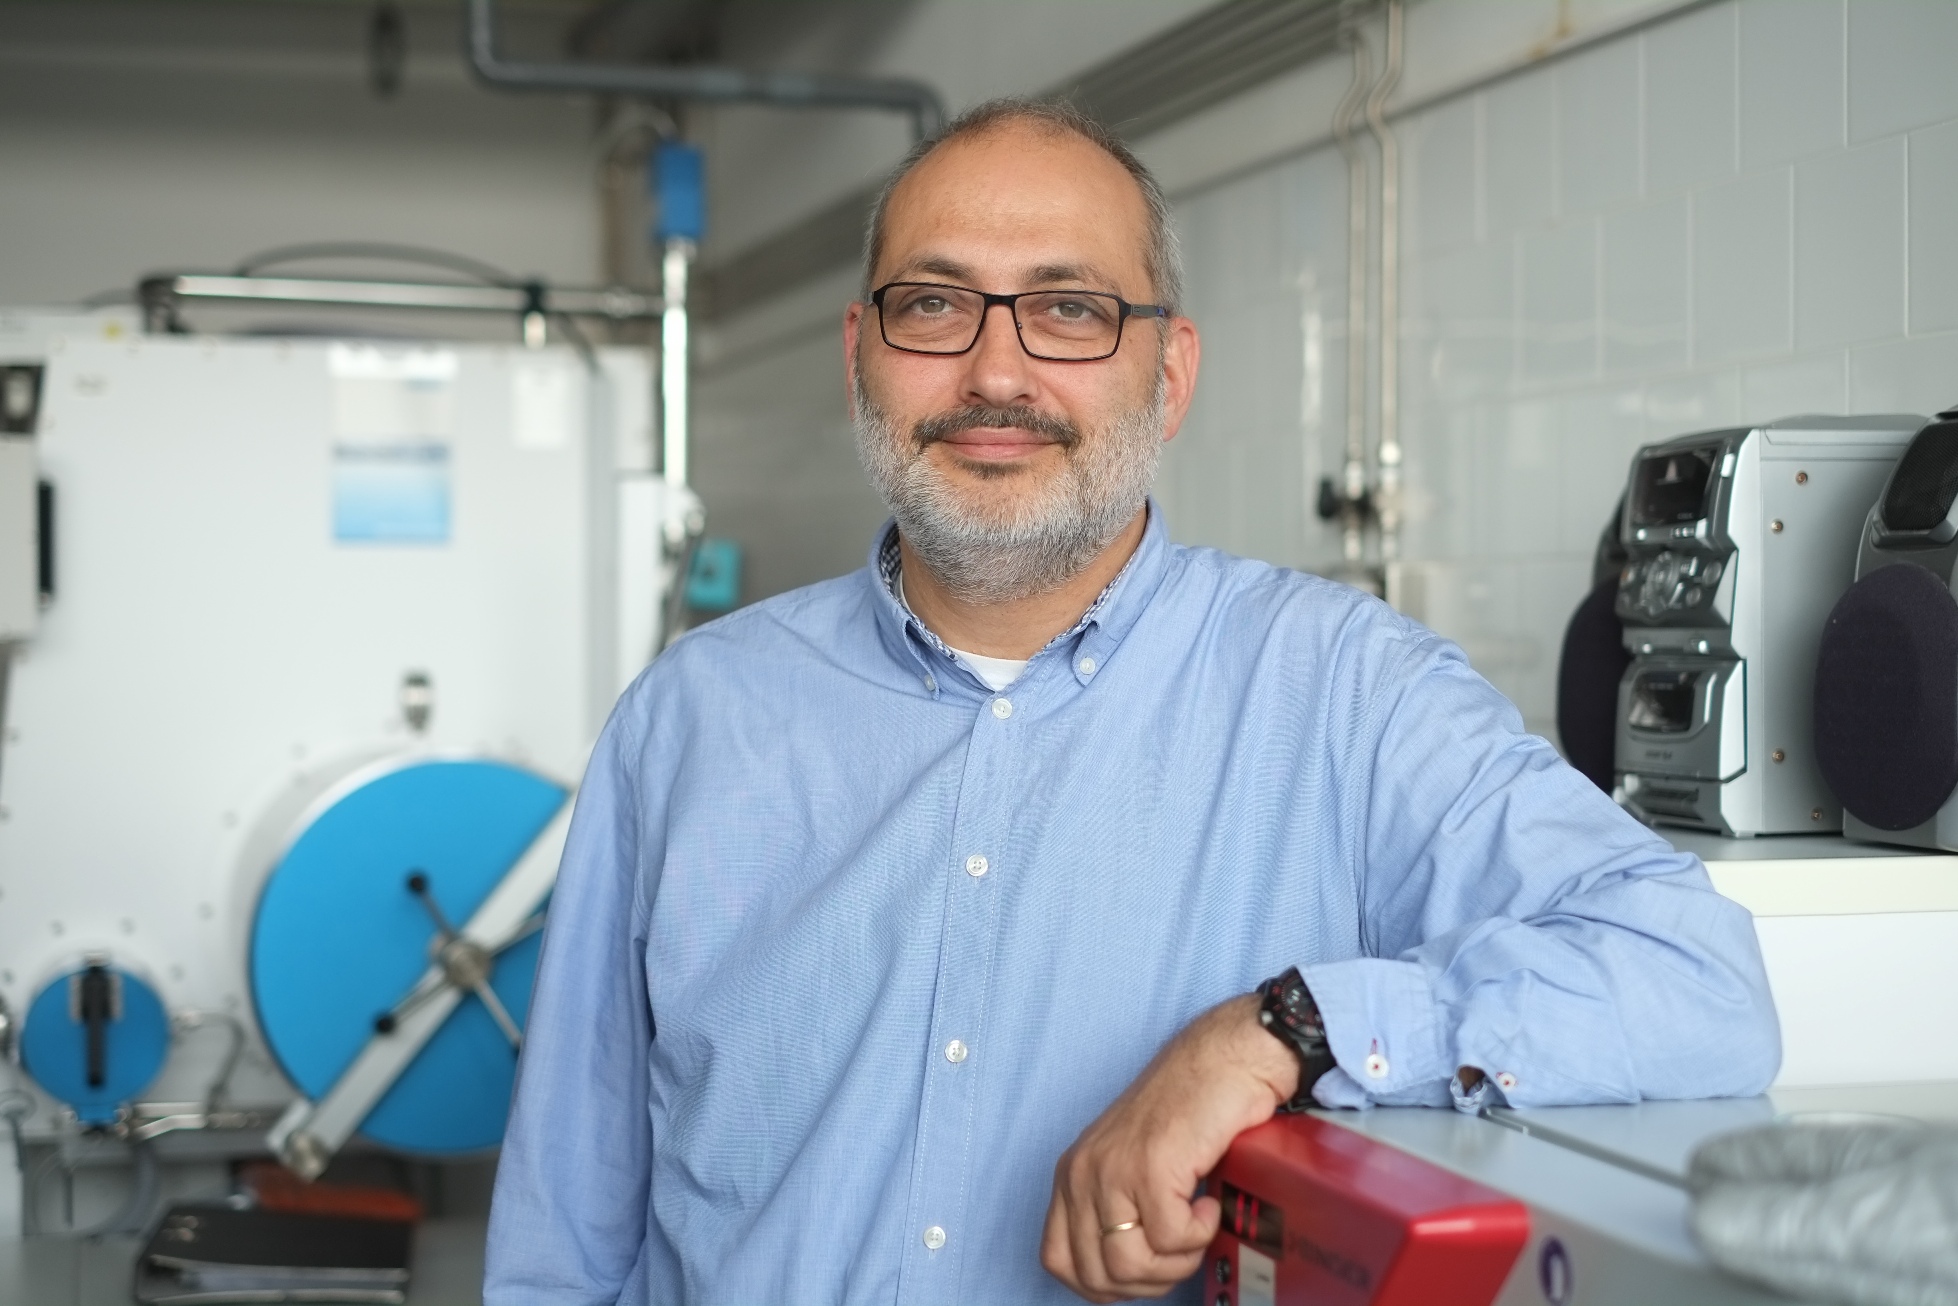  Lluís Marsal és el responsable del grup de recerca en Sistemes Nanoelectrònics i Fotònics (NePhoS) del Departament d’Enginyeria Electrònica, Elèctrica i Automàtica.